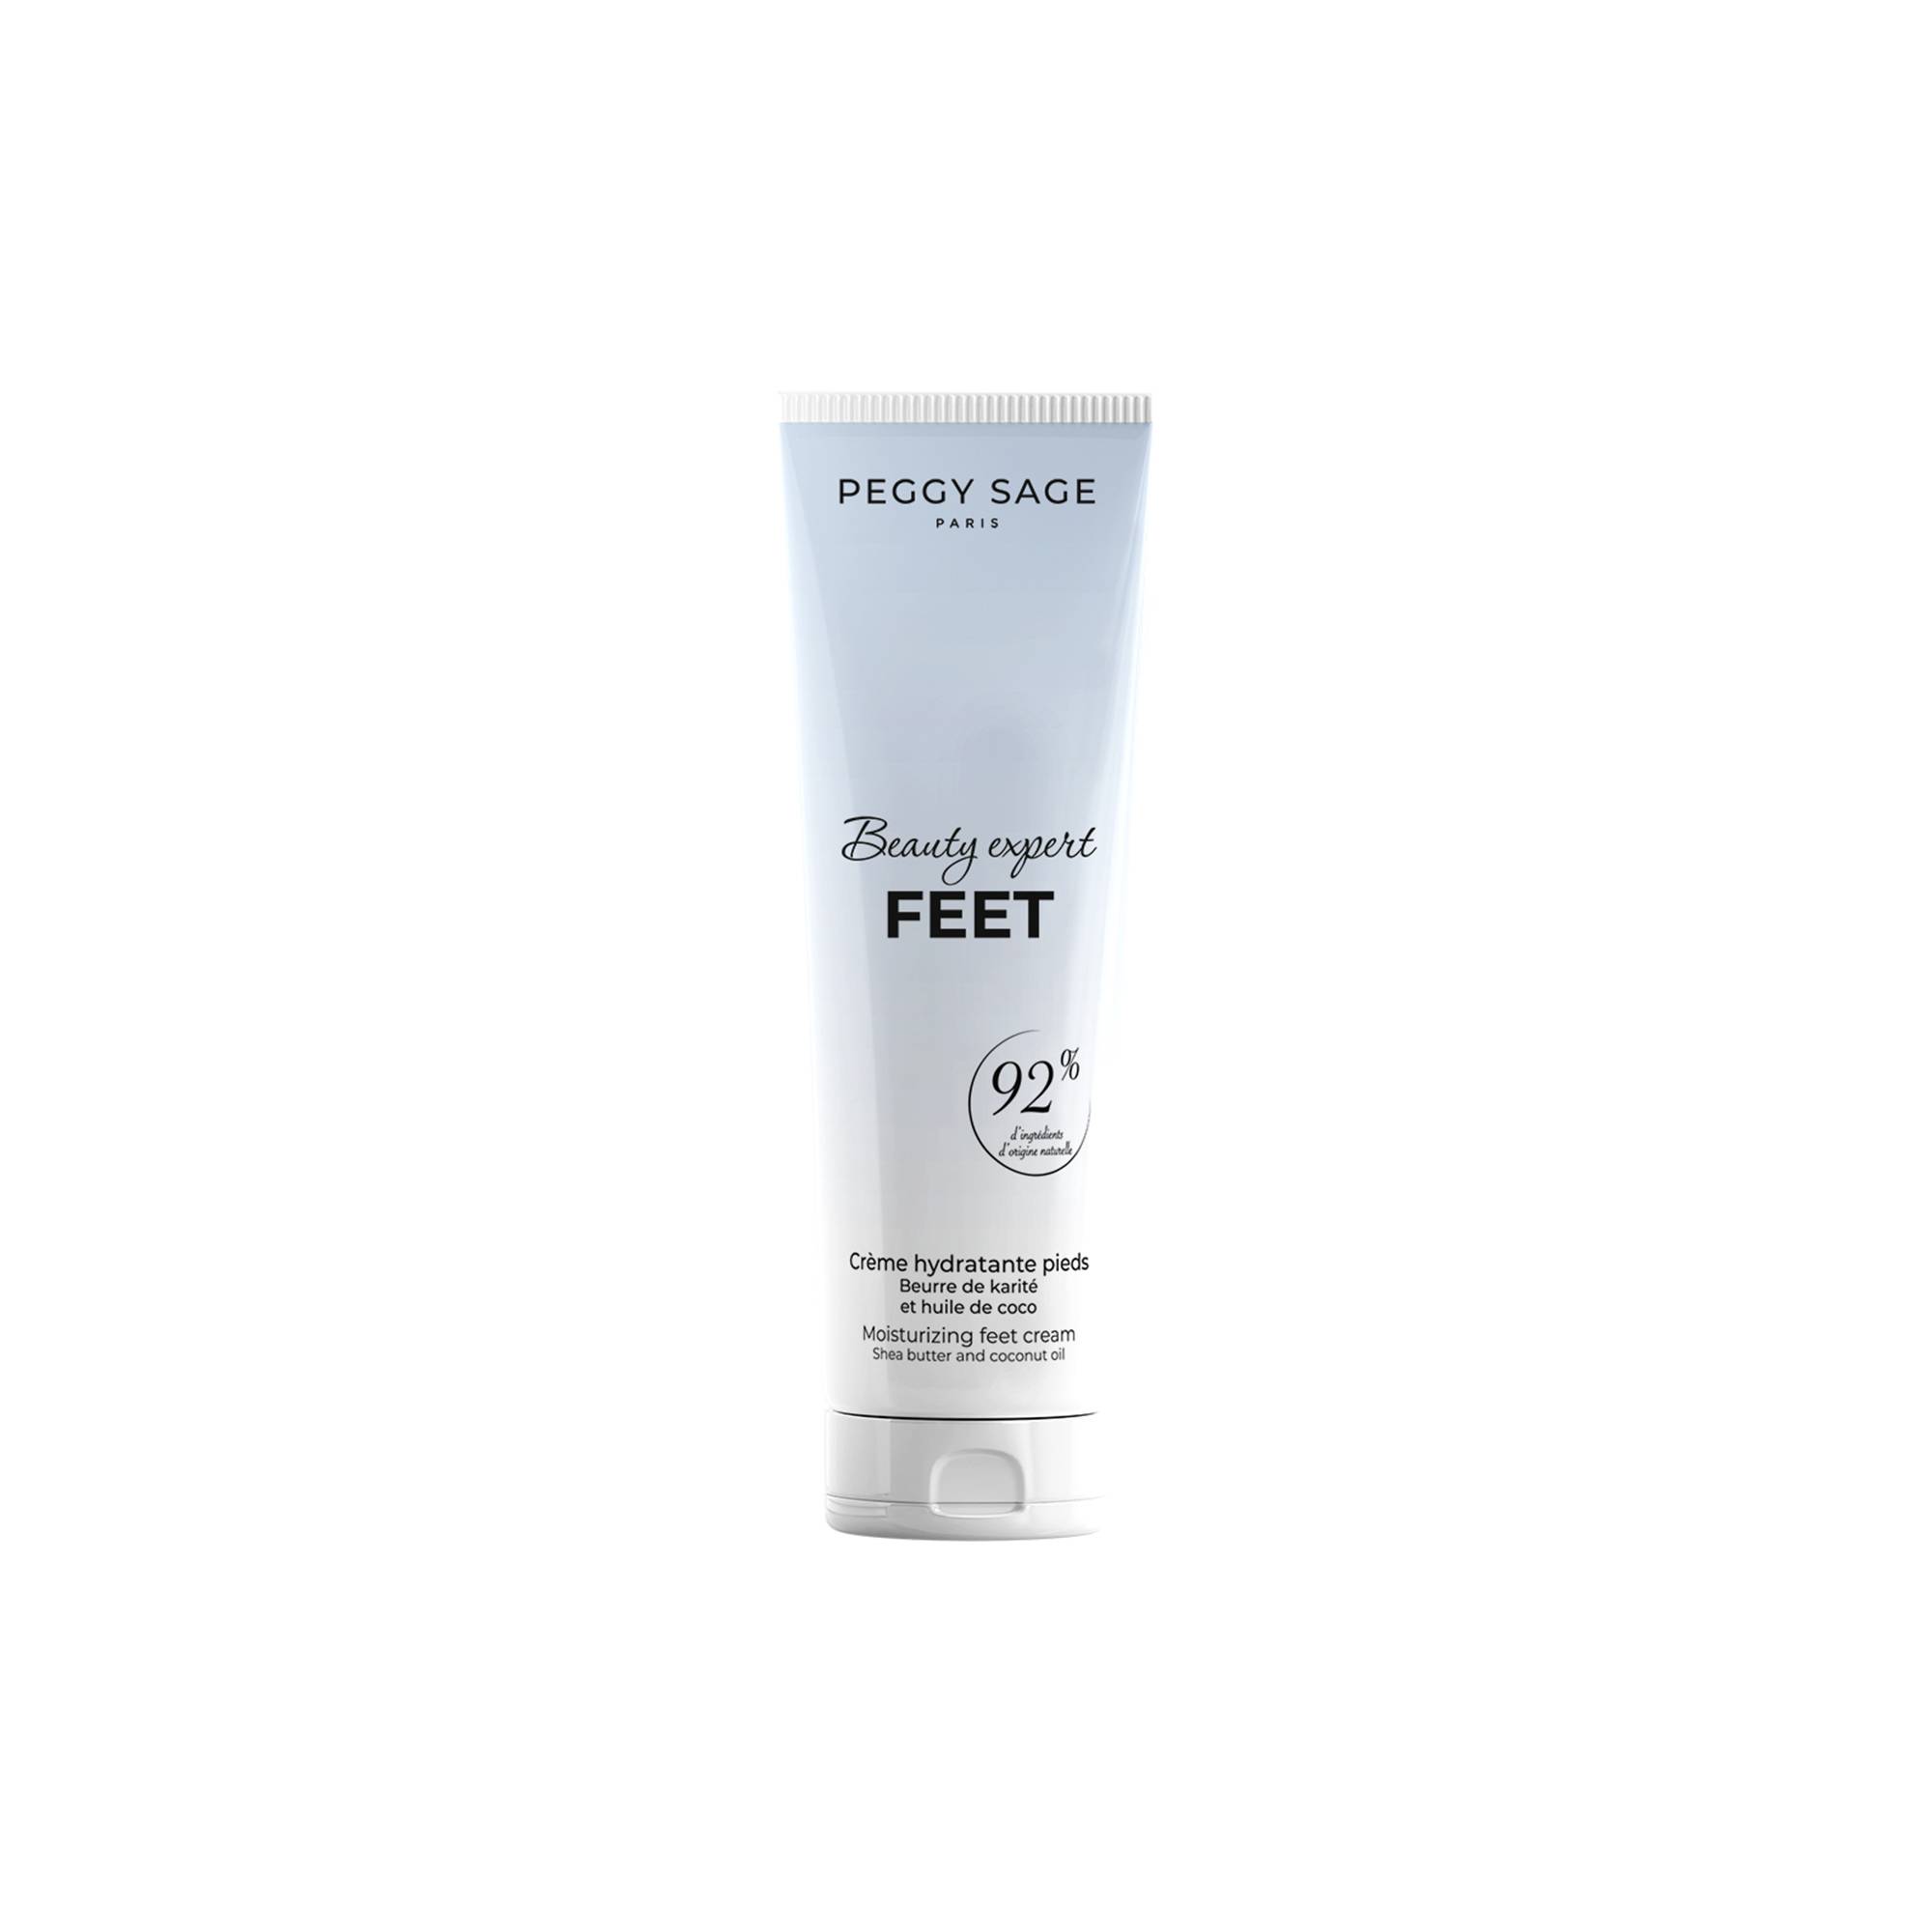 Crème hydratante pieds Beauty expert Feet de la marque Peggy Sage Contenance 100ml - 1